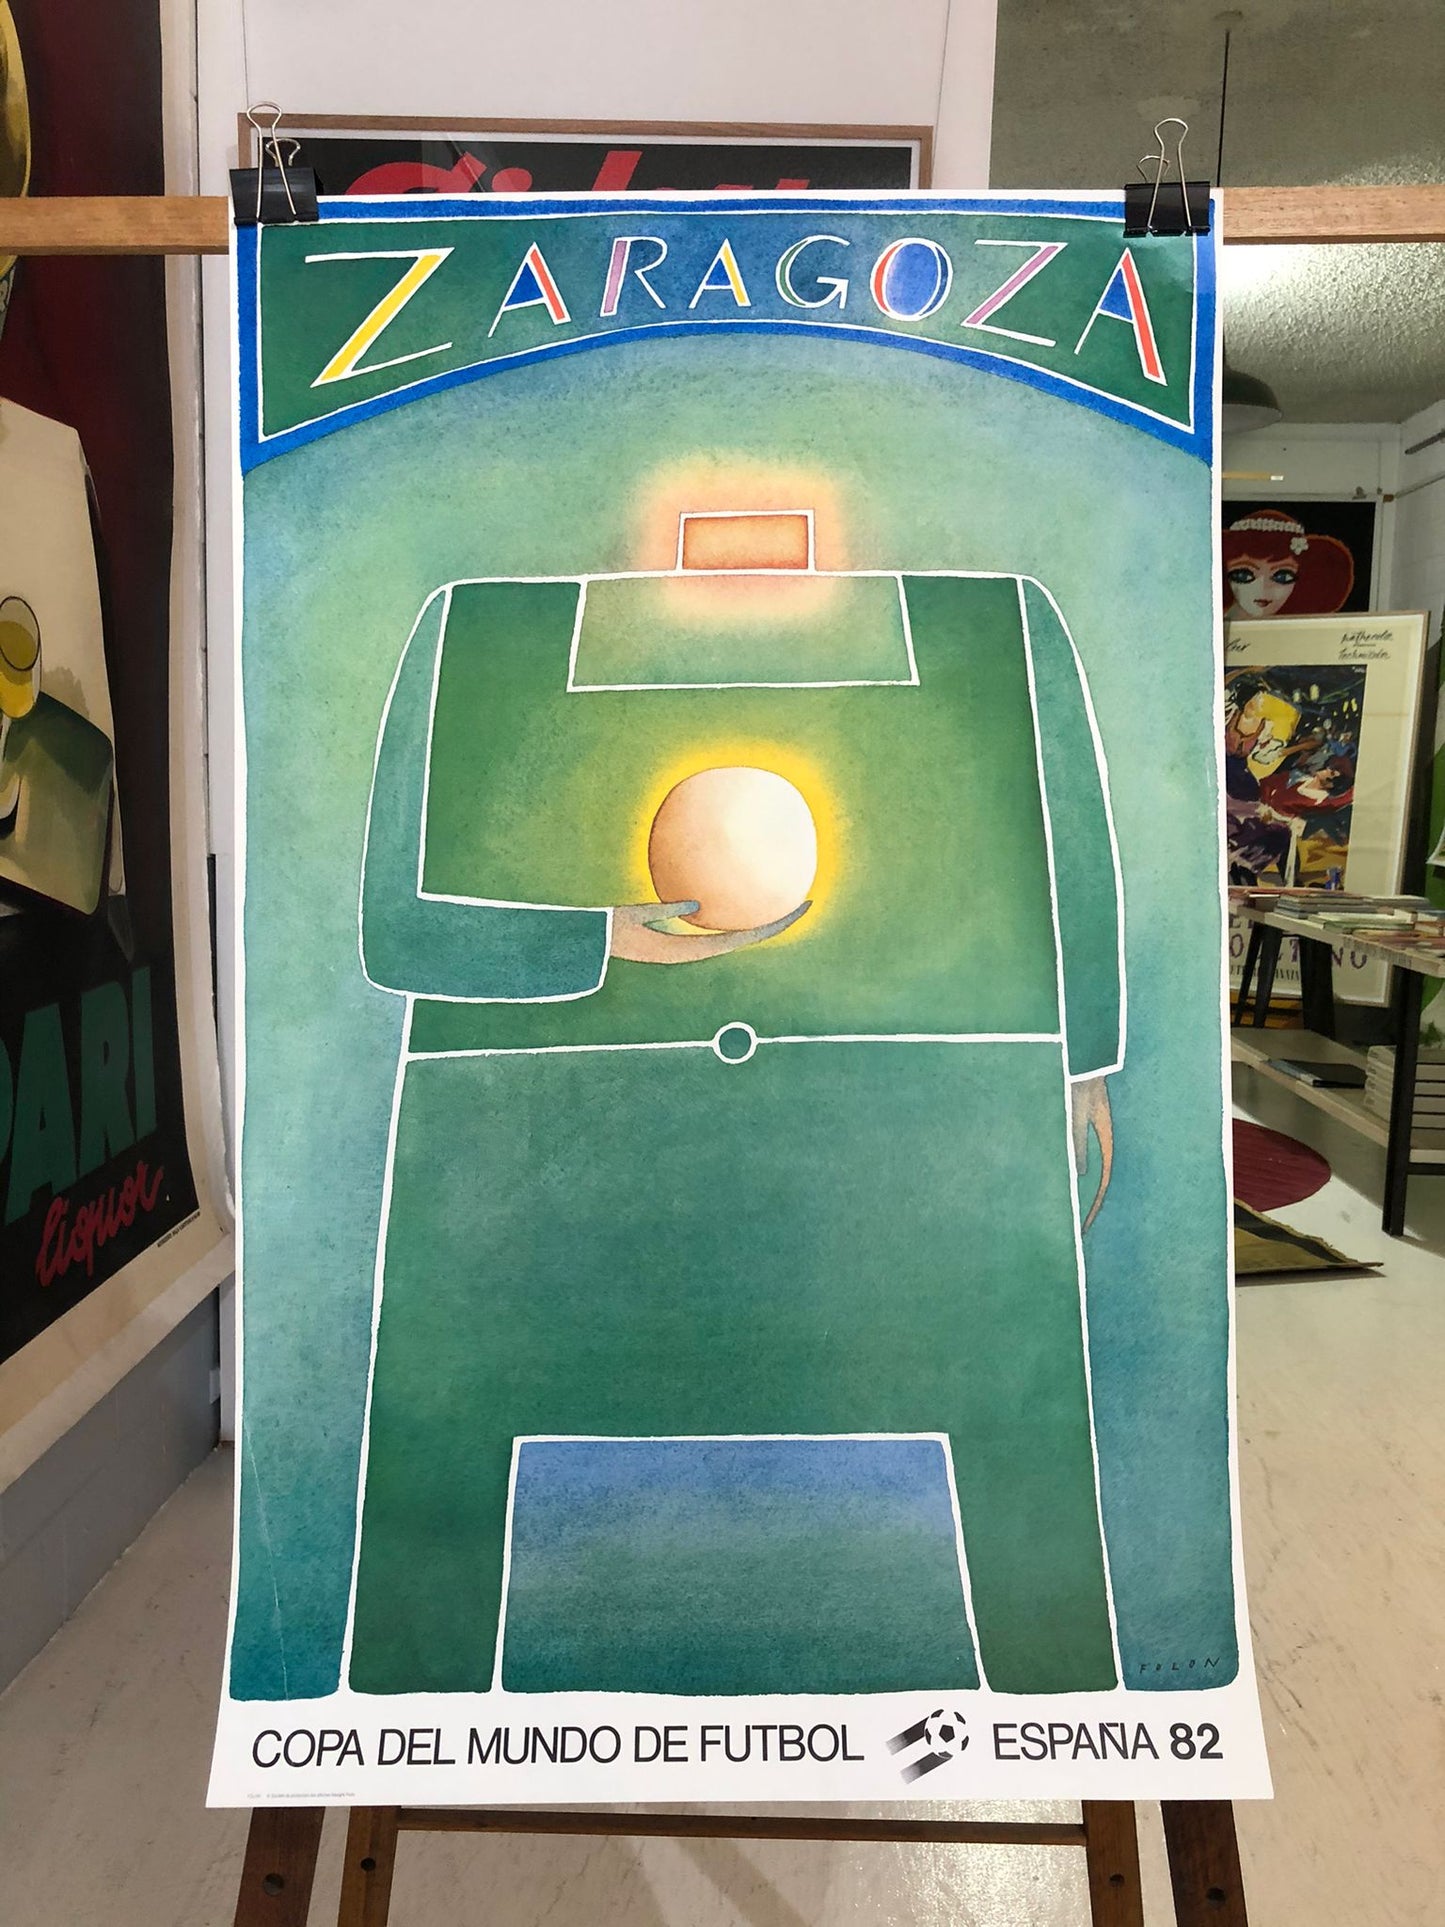 "Zaragoza" Spanish World Cup "82